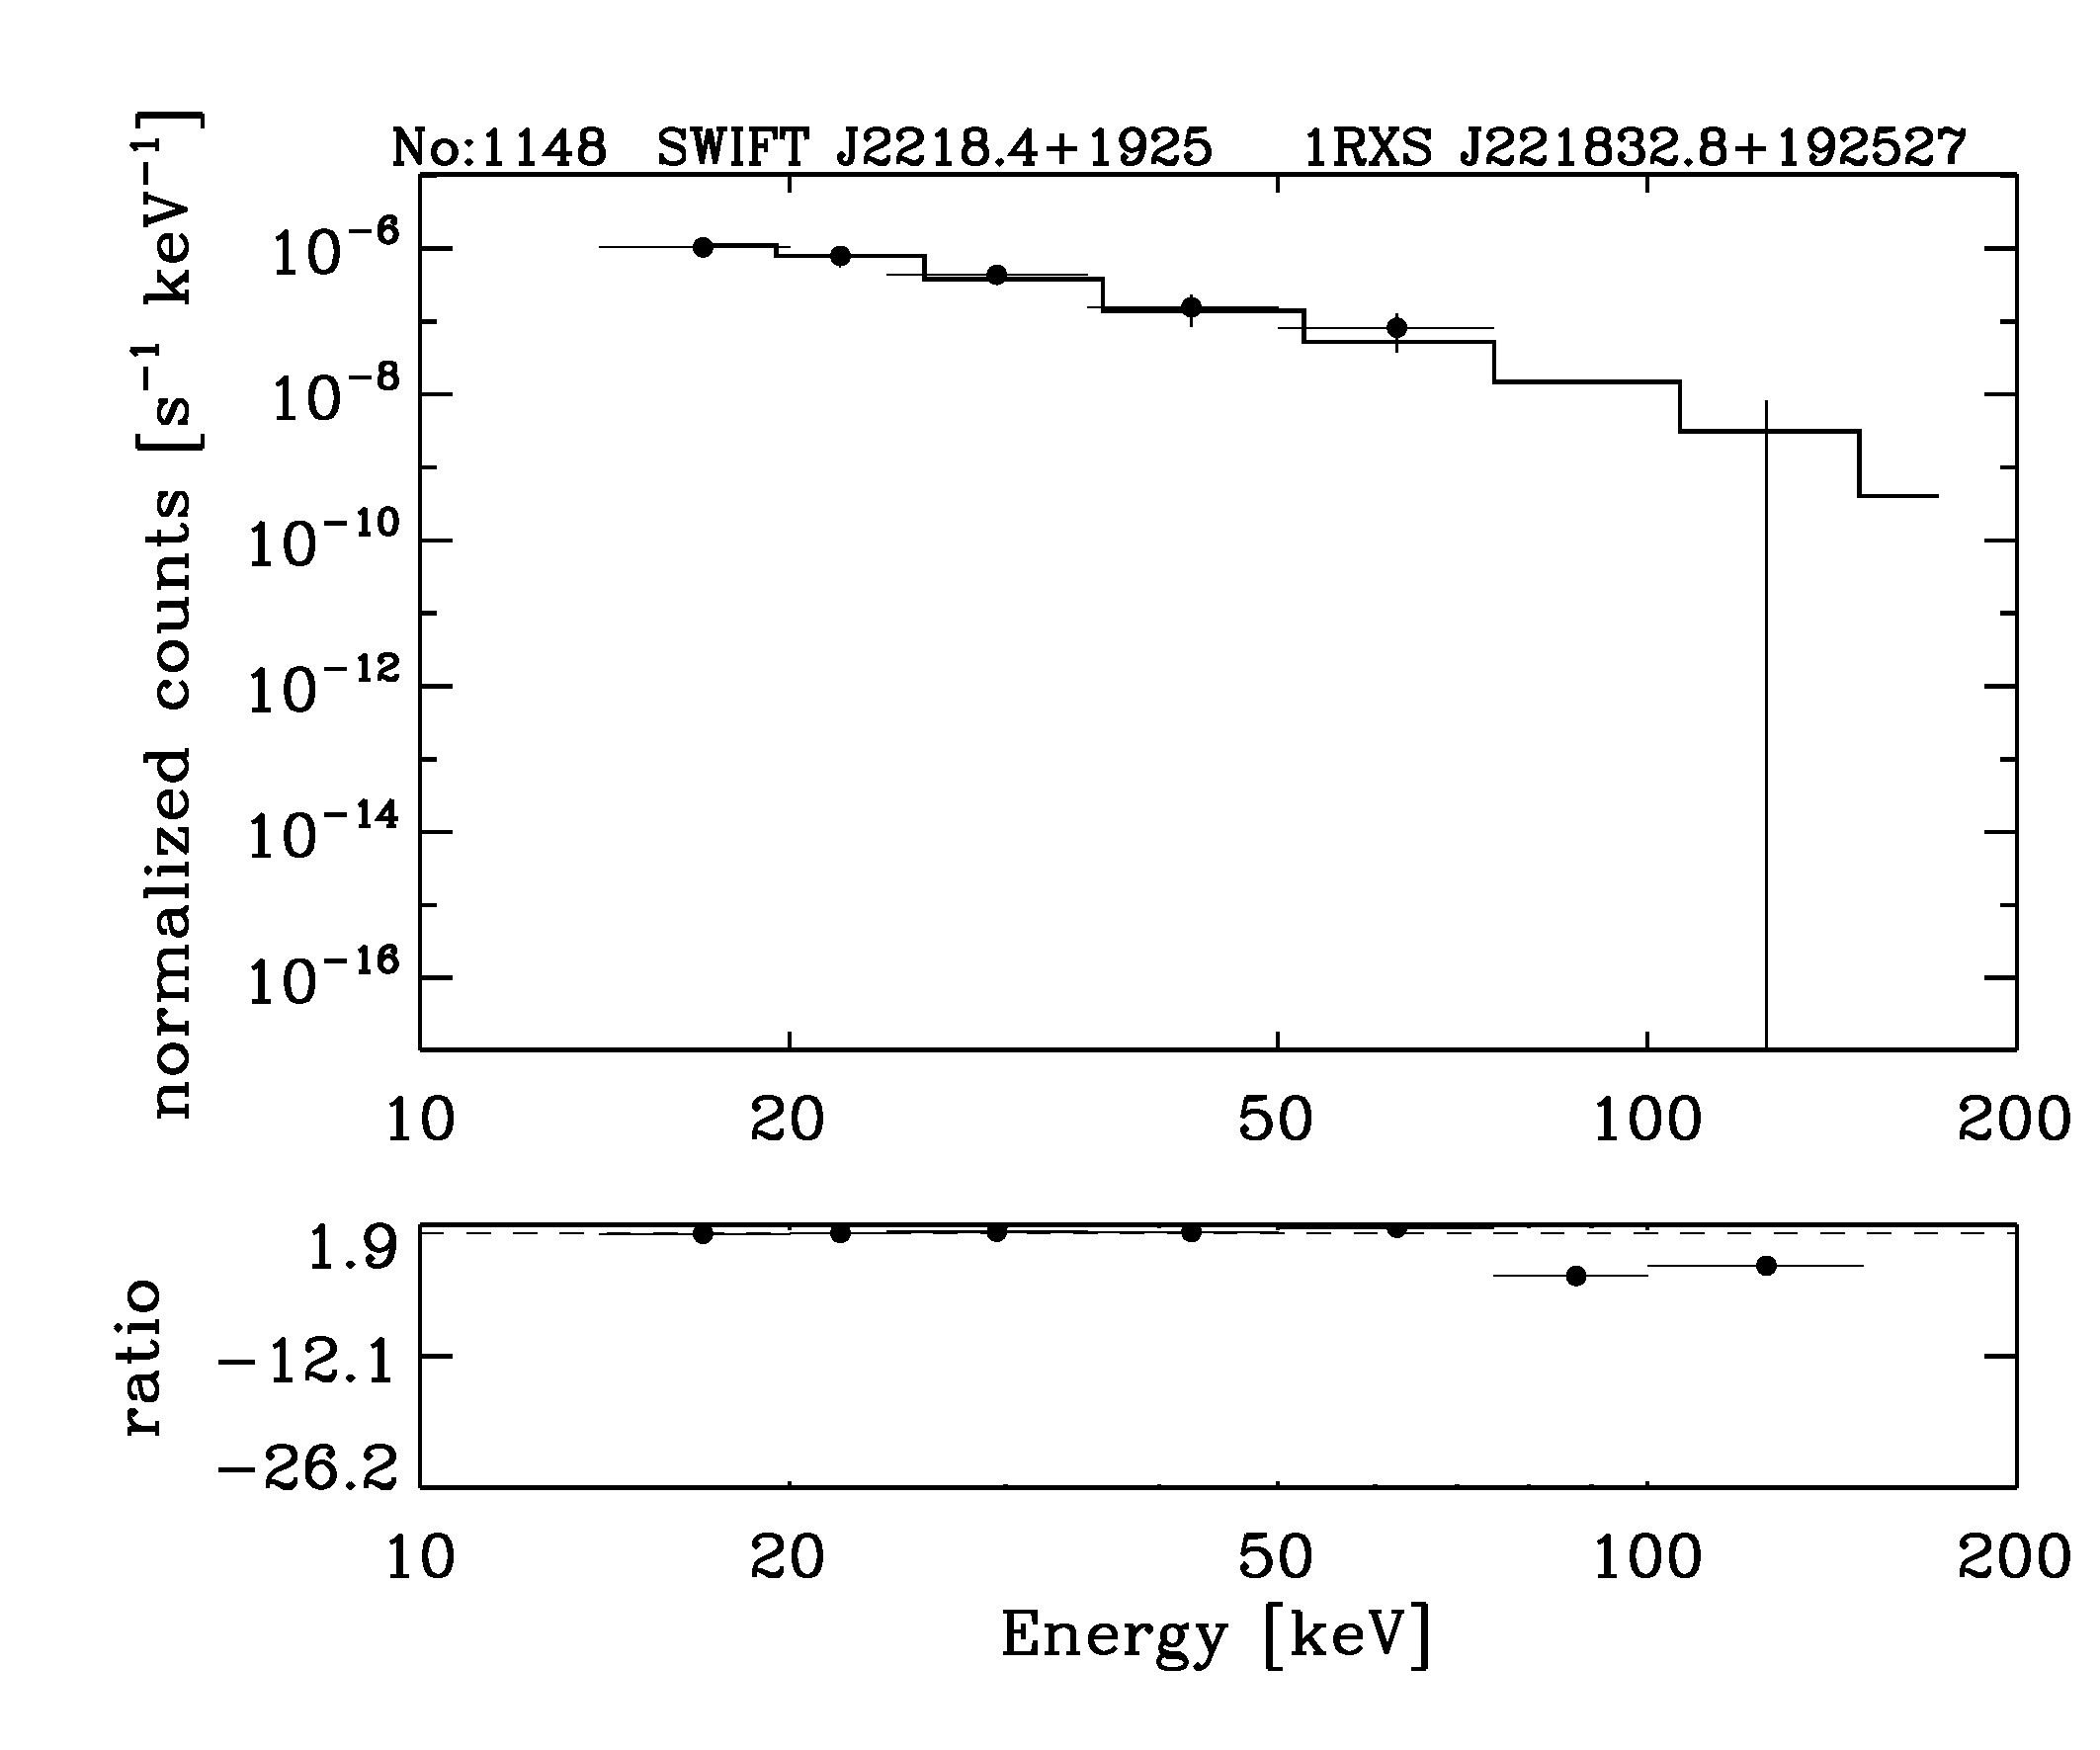 BAT Spectrum for SWIFT J2218.4+1925